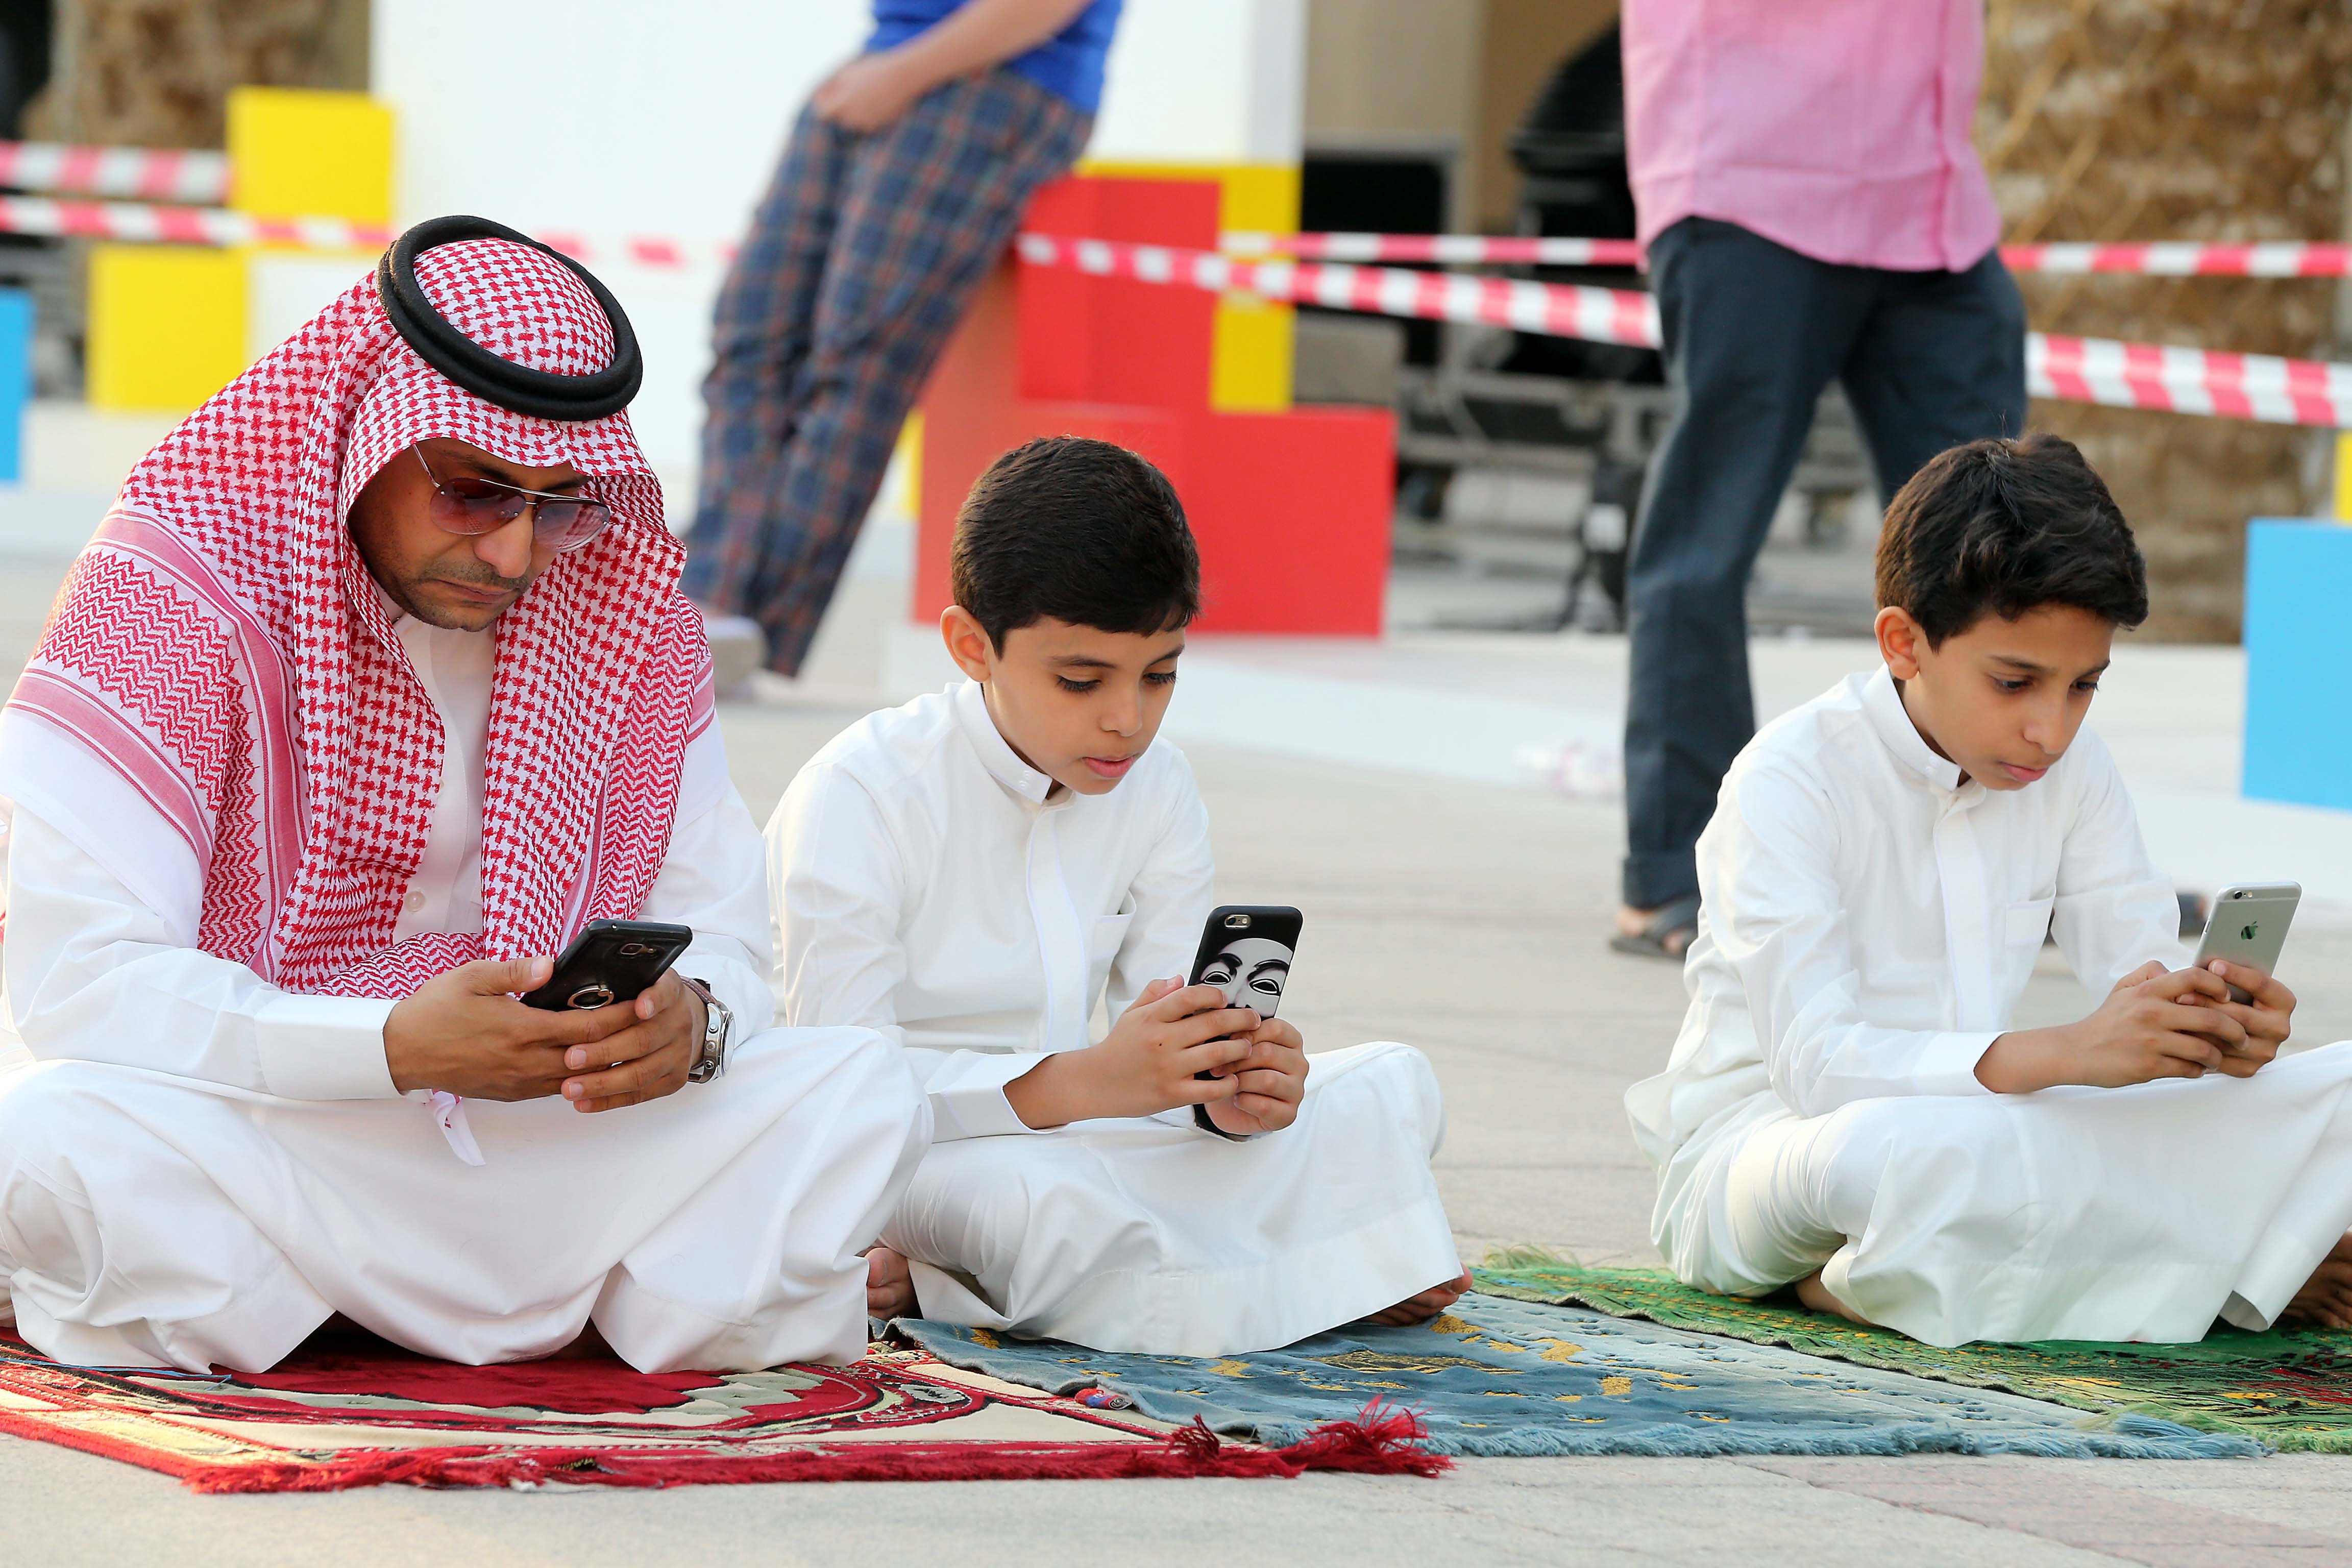 Saudi's tijdens het Suikerfeest in de al-Masmakmoskee in de Saudische hoofdstad Riyadh. Foto: EPA